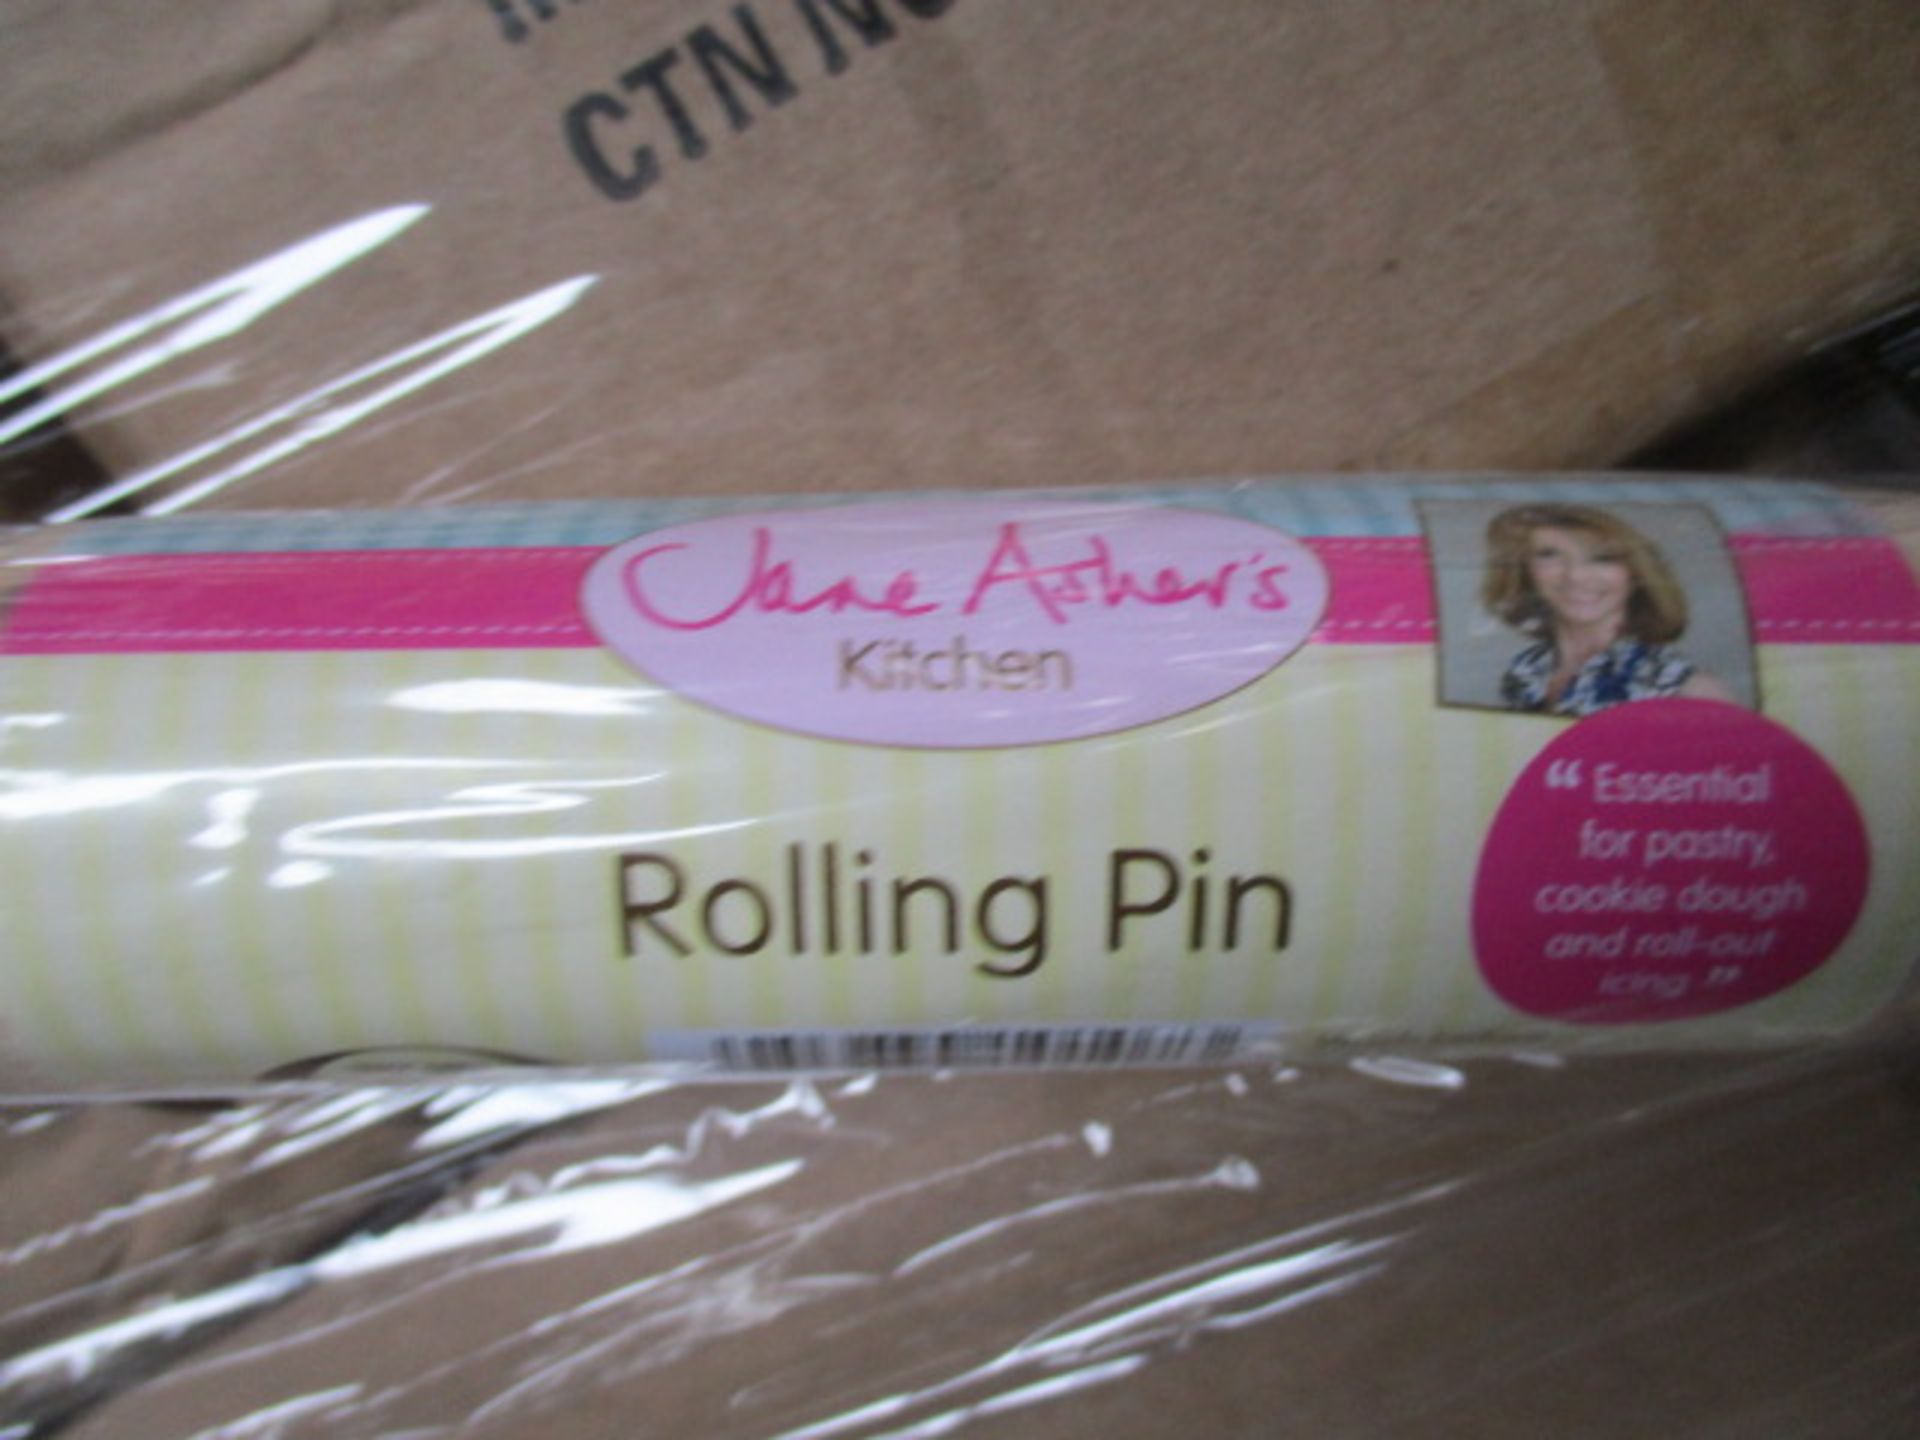 50 x cartons Jane Asher Rolling Pin - 36pcs per carton - 1800pcs total sealed unopened - rrp £ 1. - Image 2 of 4